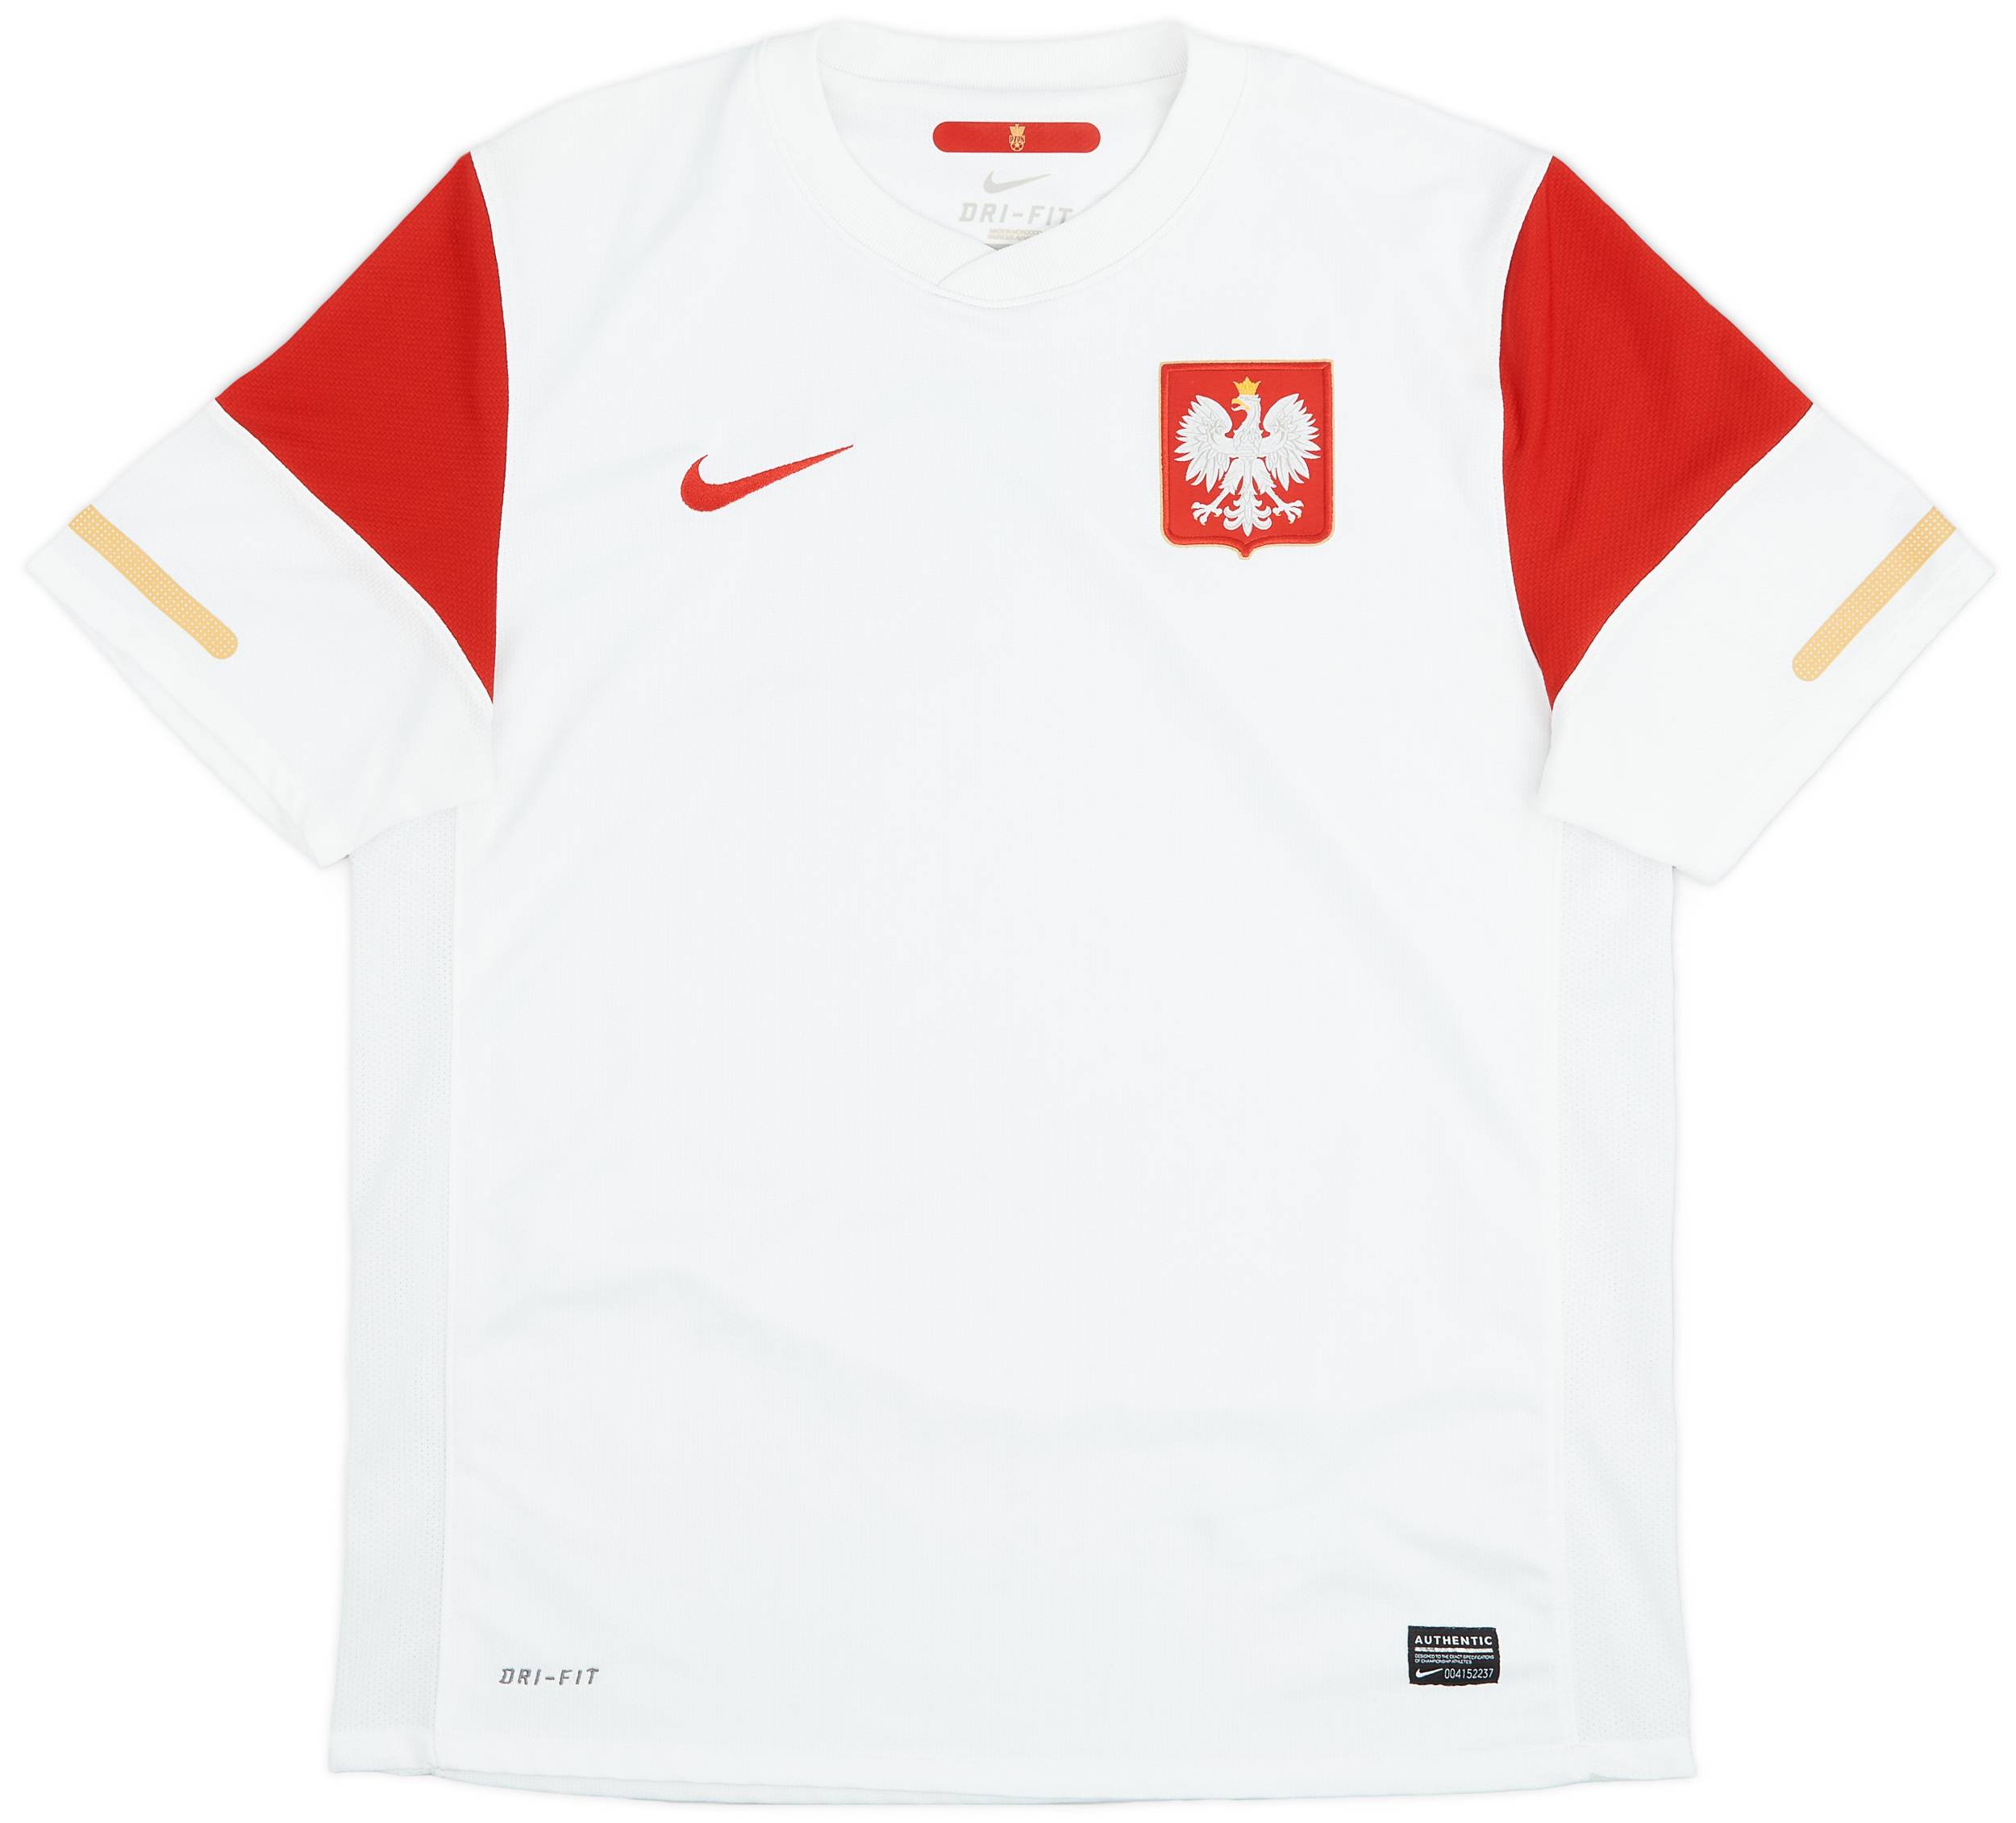 2010-12 Poland Home Shirt - 9/10 - (L)